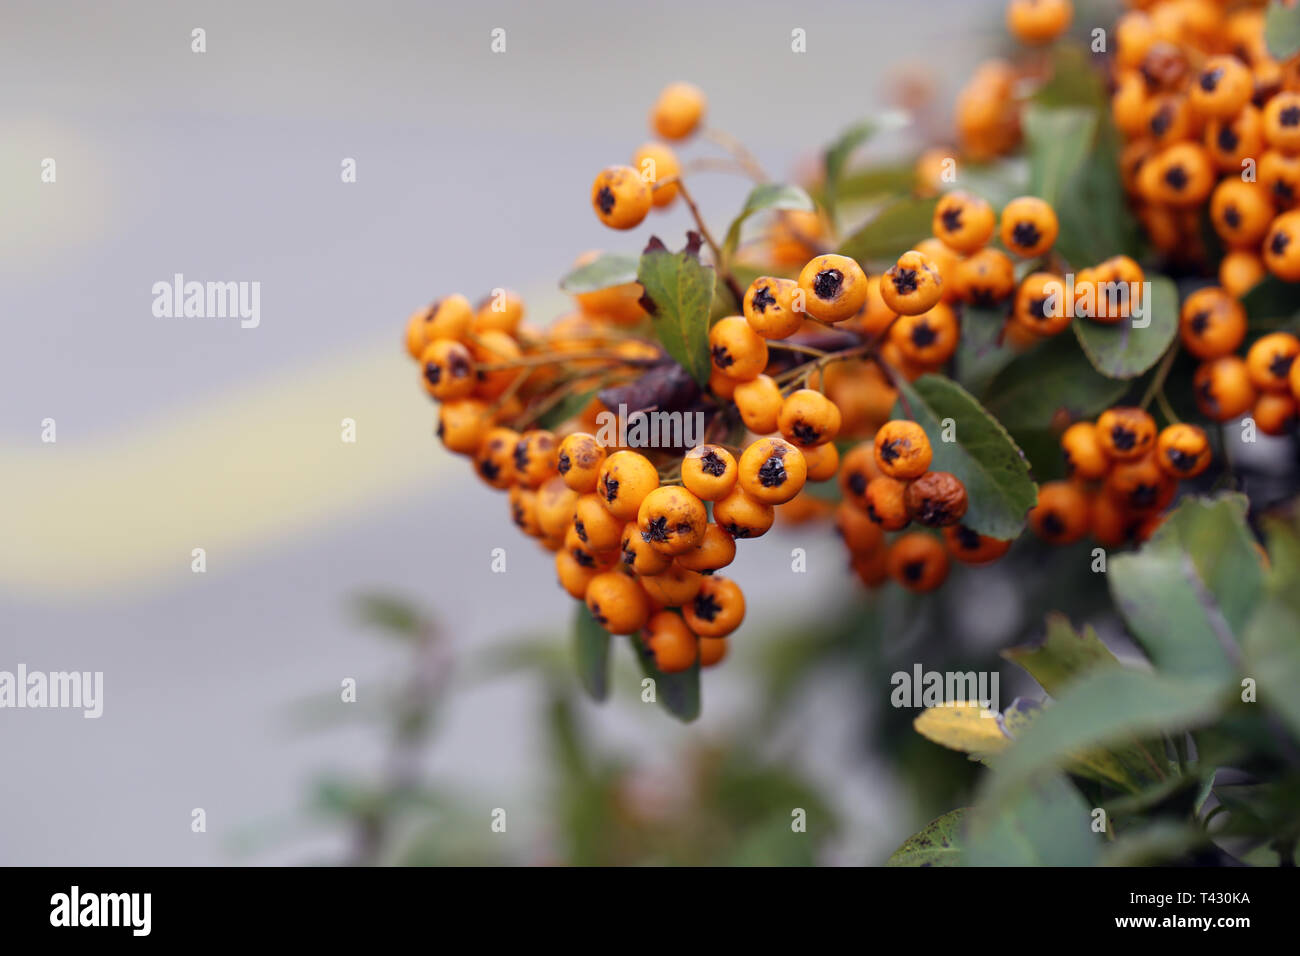 Bacche di colore arancione appeso a un ramo di bush. Lo sfondo include belle foglie verdi e qualche asfalto. Primo piano. Immagine a colori. Foto Stock